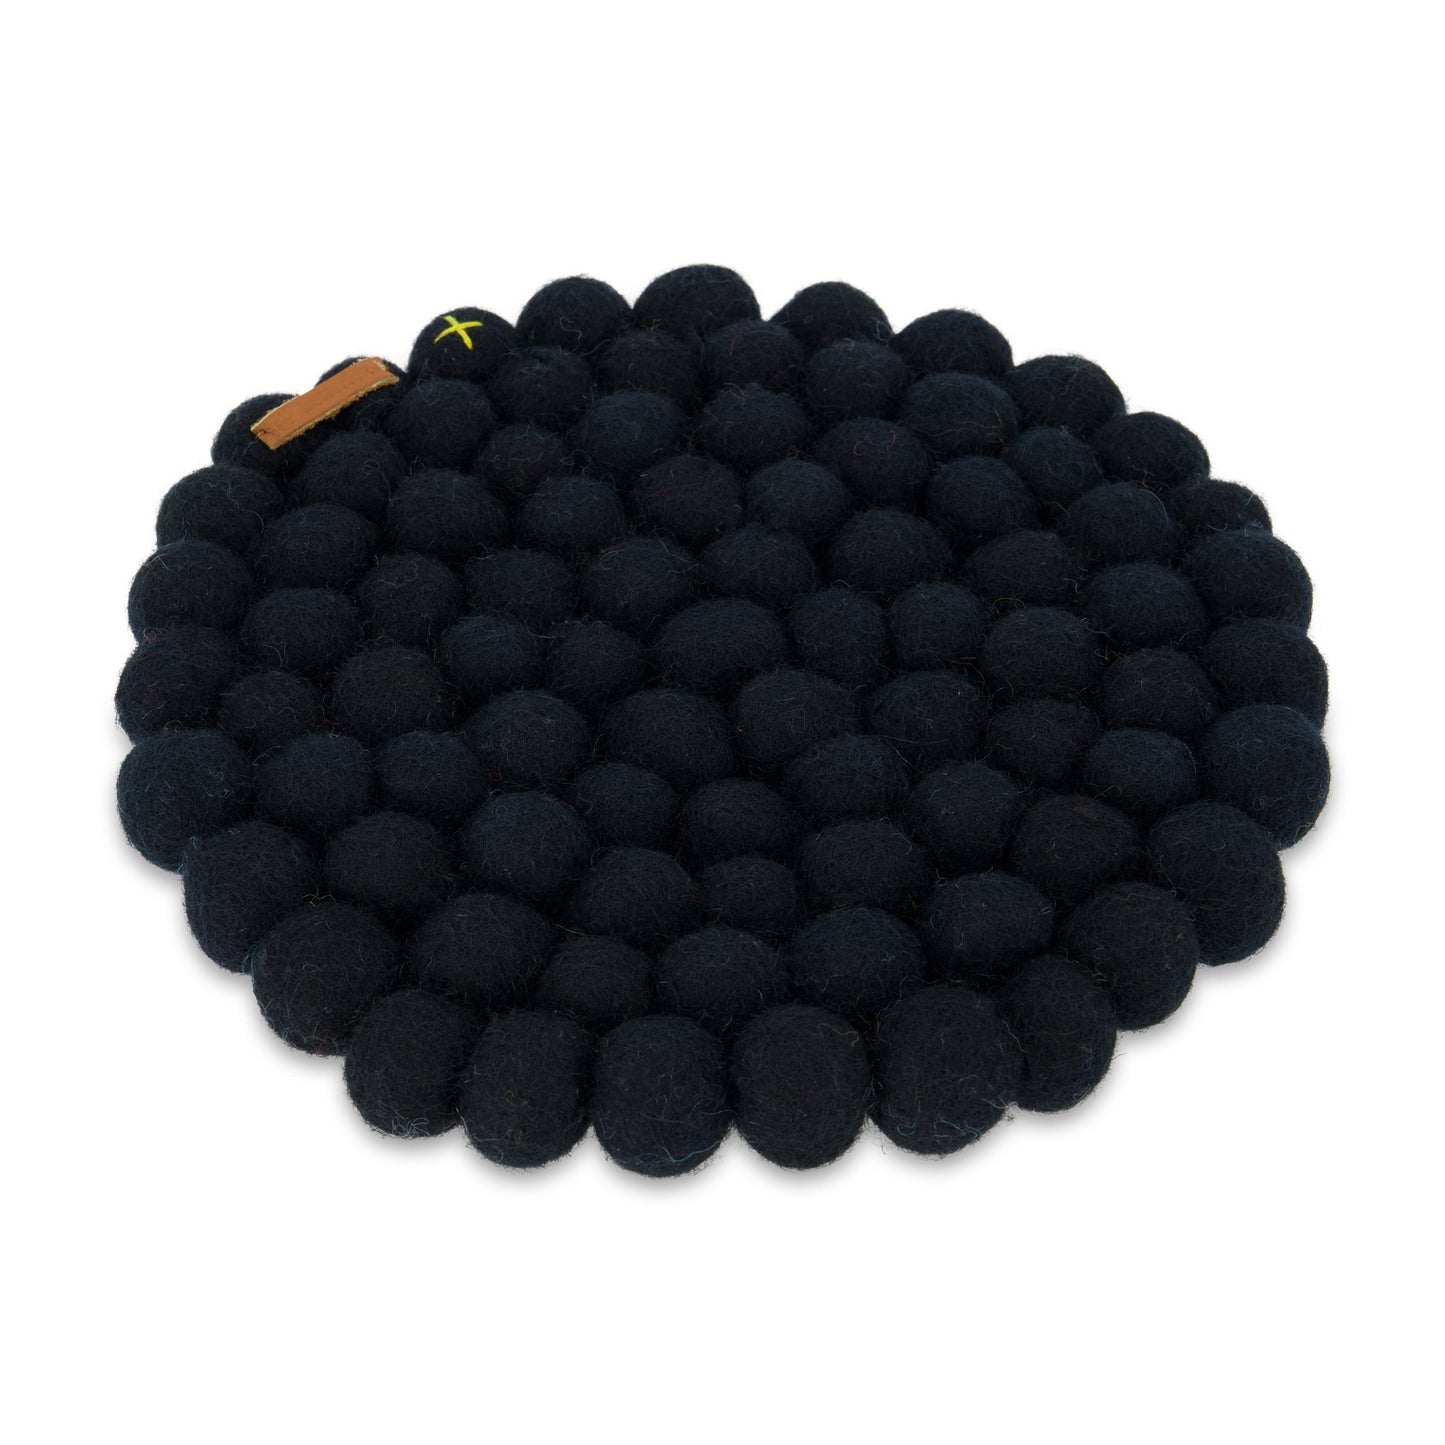 Round Ball Trivet - Black